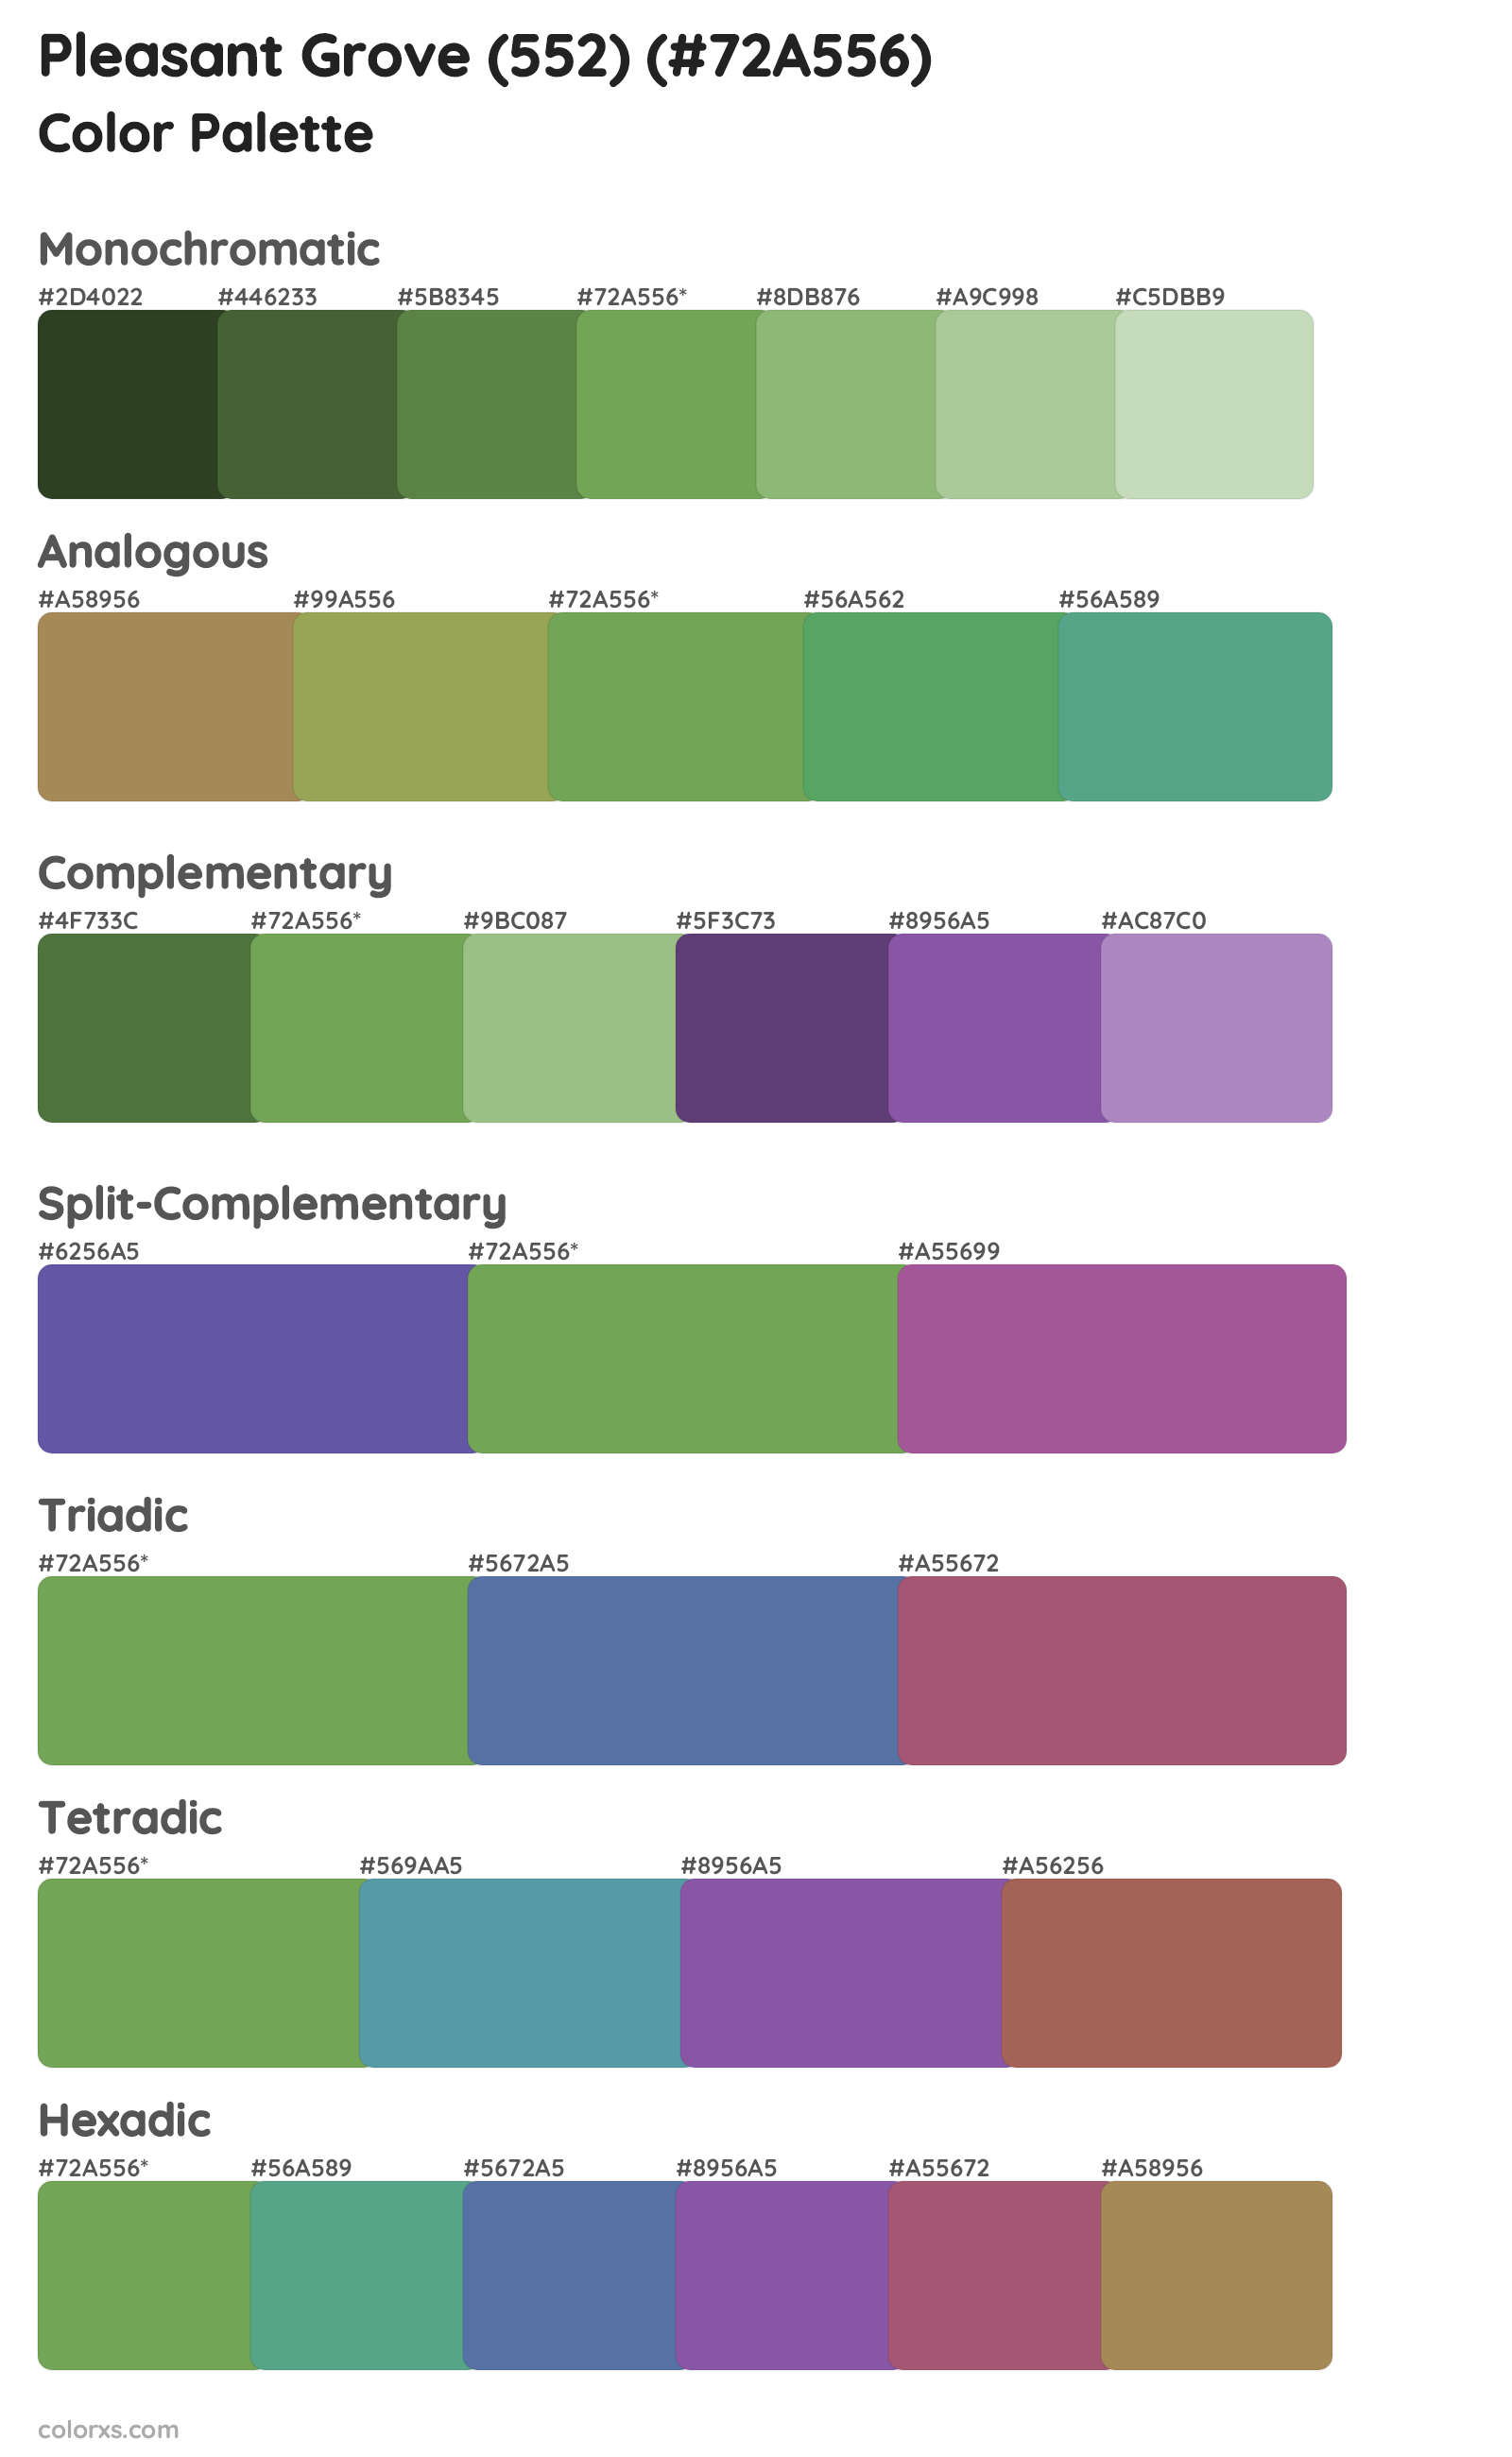 Pleasant Grove (552) Color Scheme Palettes